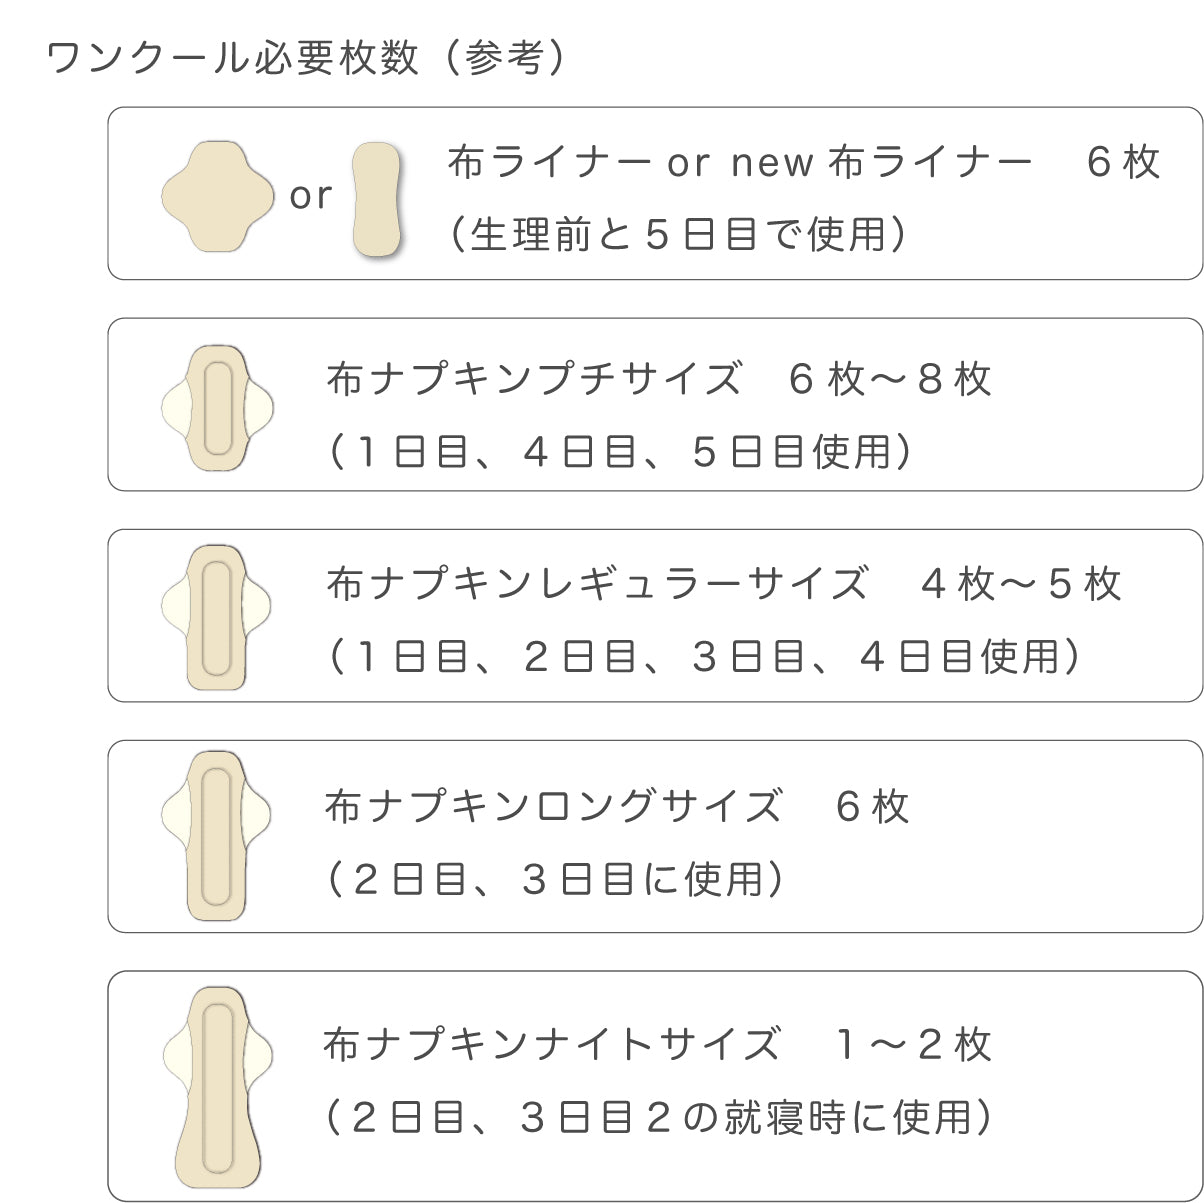 ■ 布ライナー・布ナプキン オーダー商品 【リボン】 ブラック